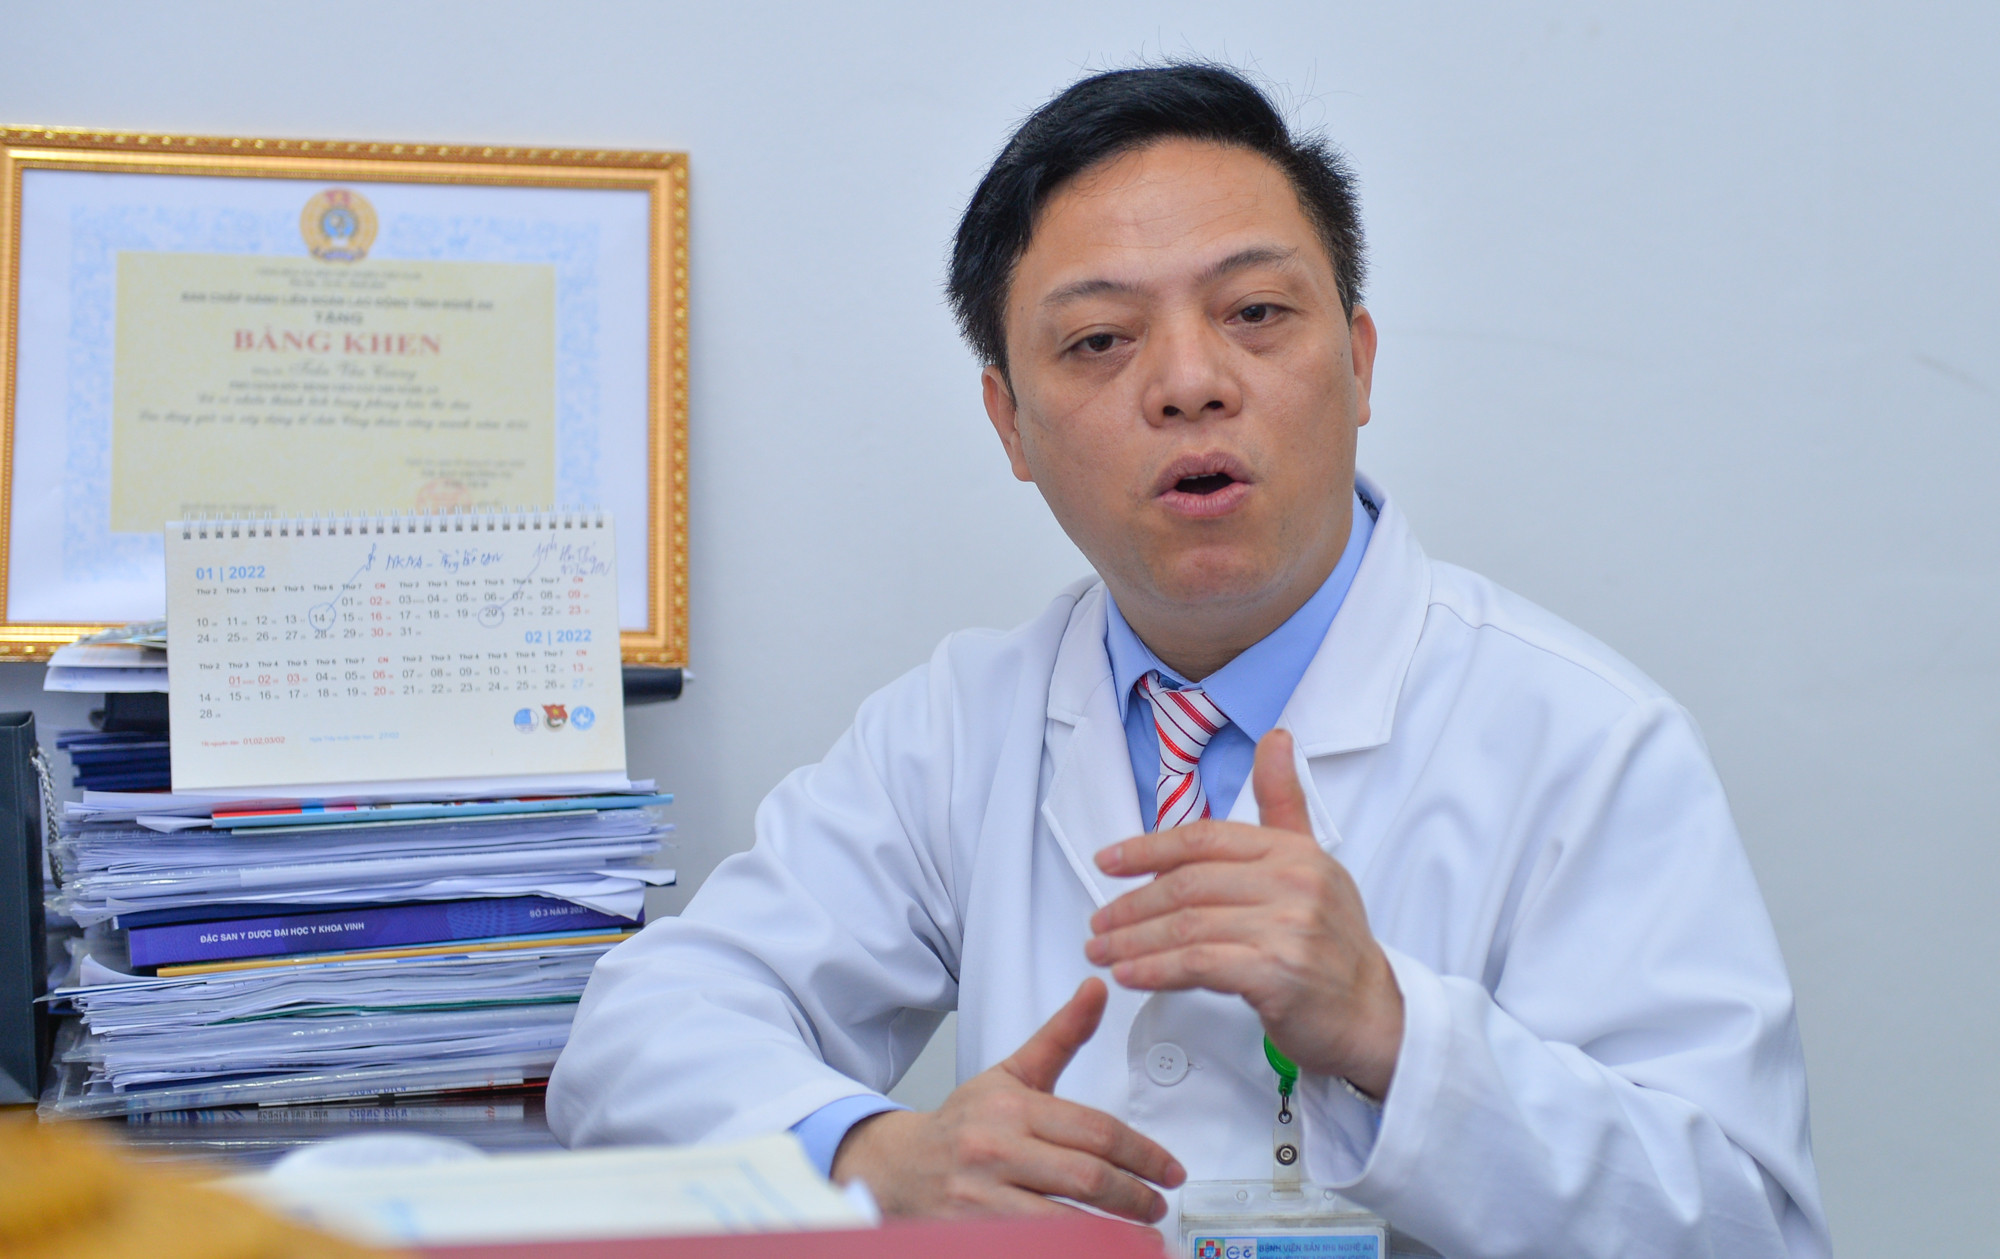 Tiến sĩ, Bác sĩ Trần Văn Cương: Với trẻ là thân nhân của cán bộ y tế chúng tôi, khi có chỉ định tiêm thì chúng tôi đều cho trẻ tiêm cả. Ảnh: Thành Cường